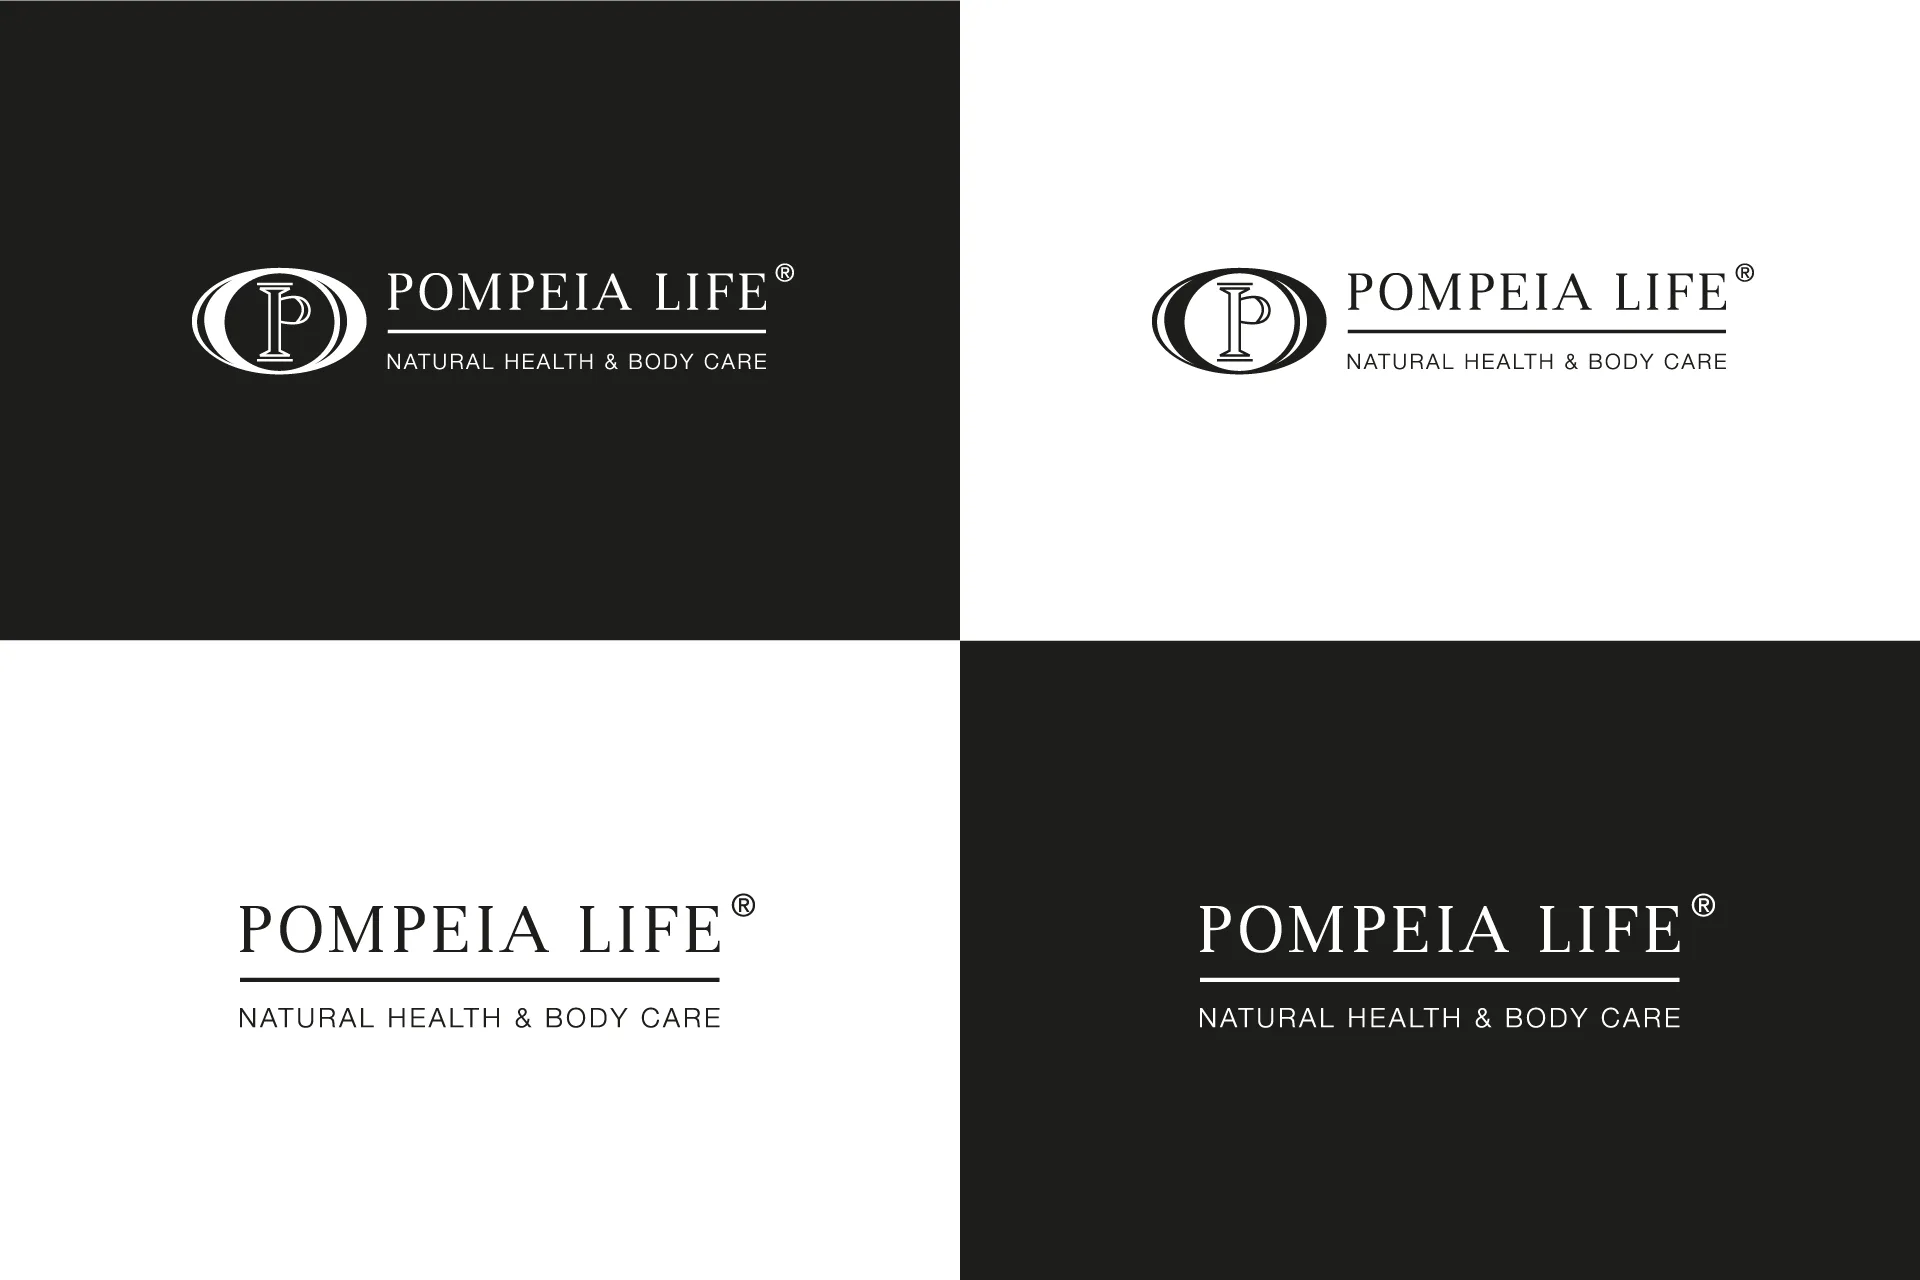 Pompeia Life | diseño de identidad